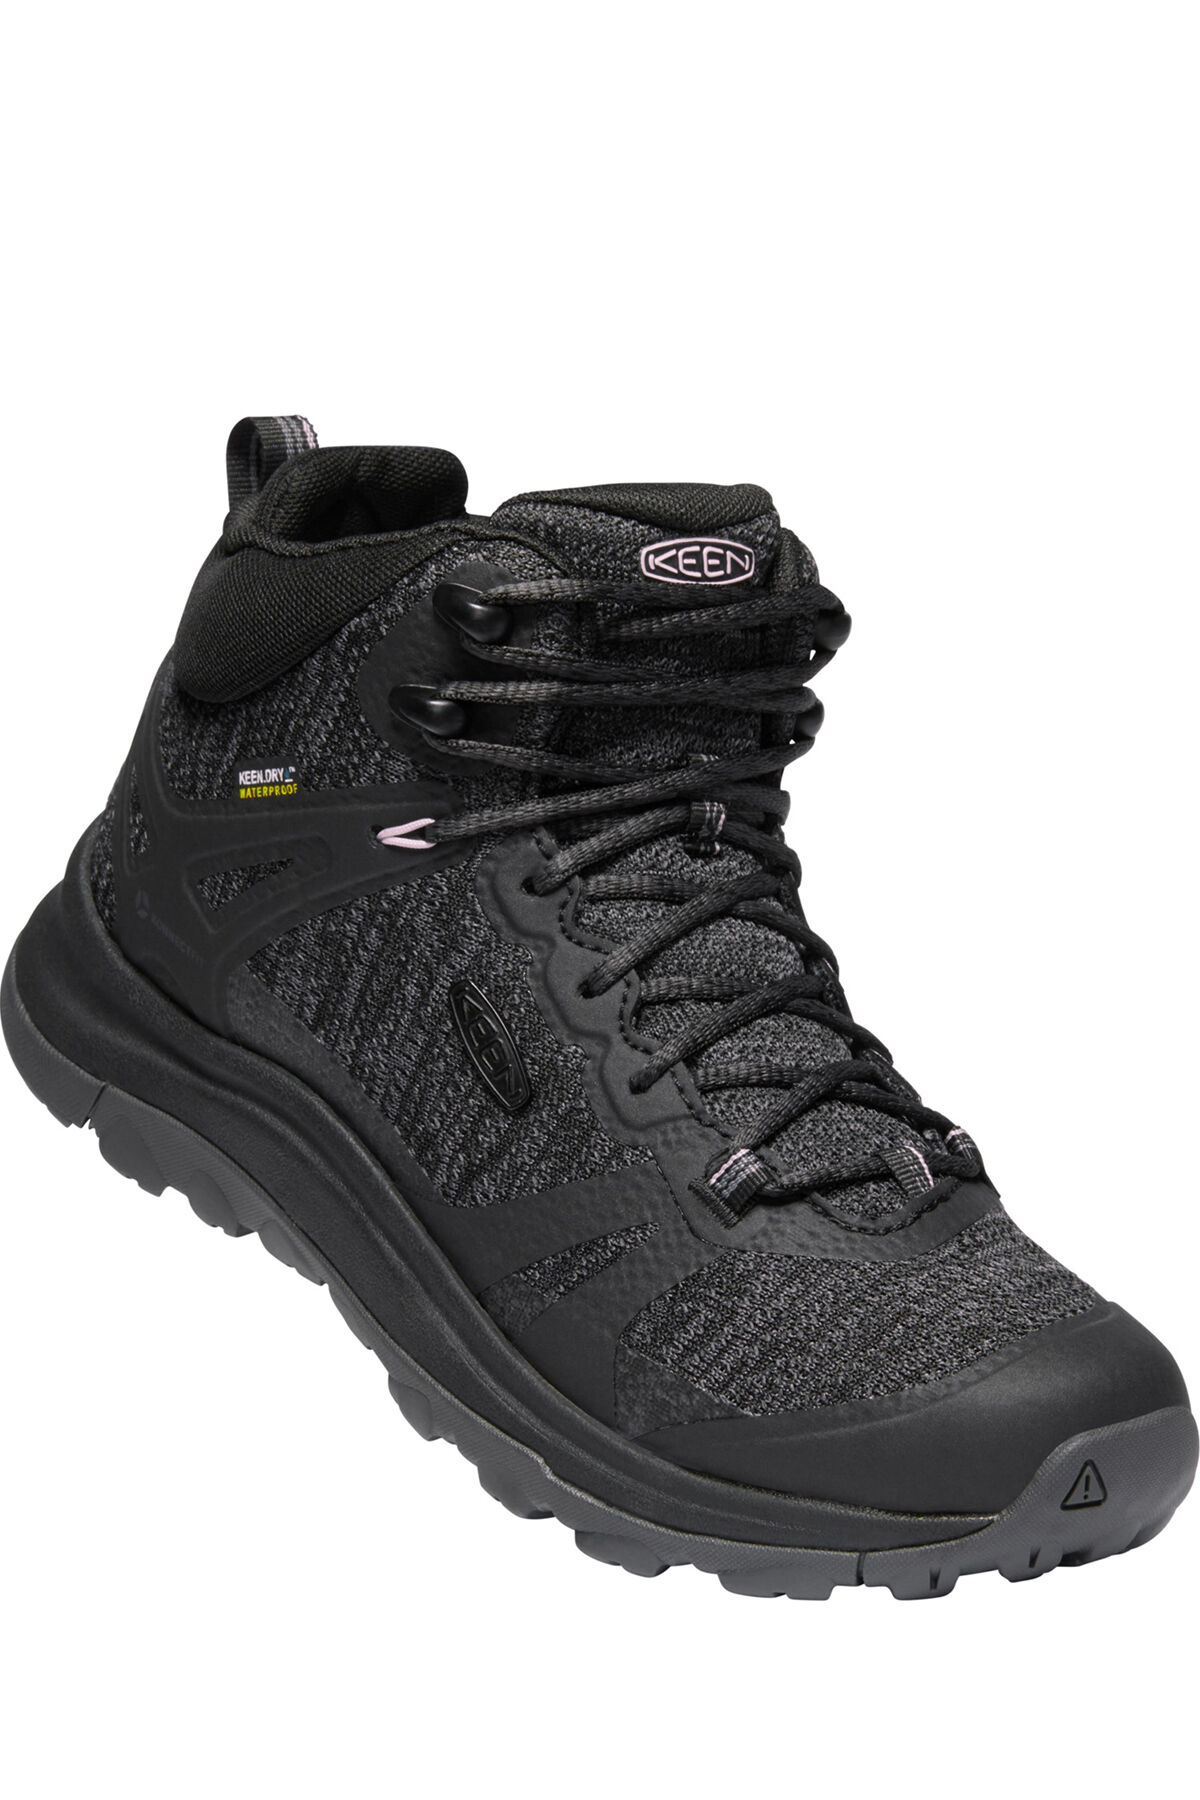 Keen Hiking Water Closed Toe Sandals XT1205 Purple Women's Size 4 | eBay